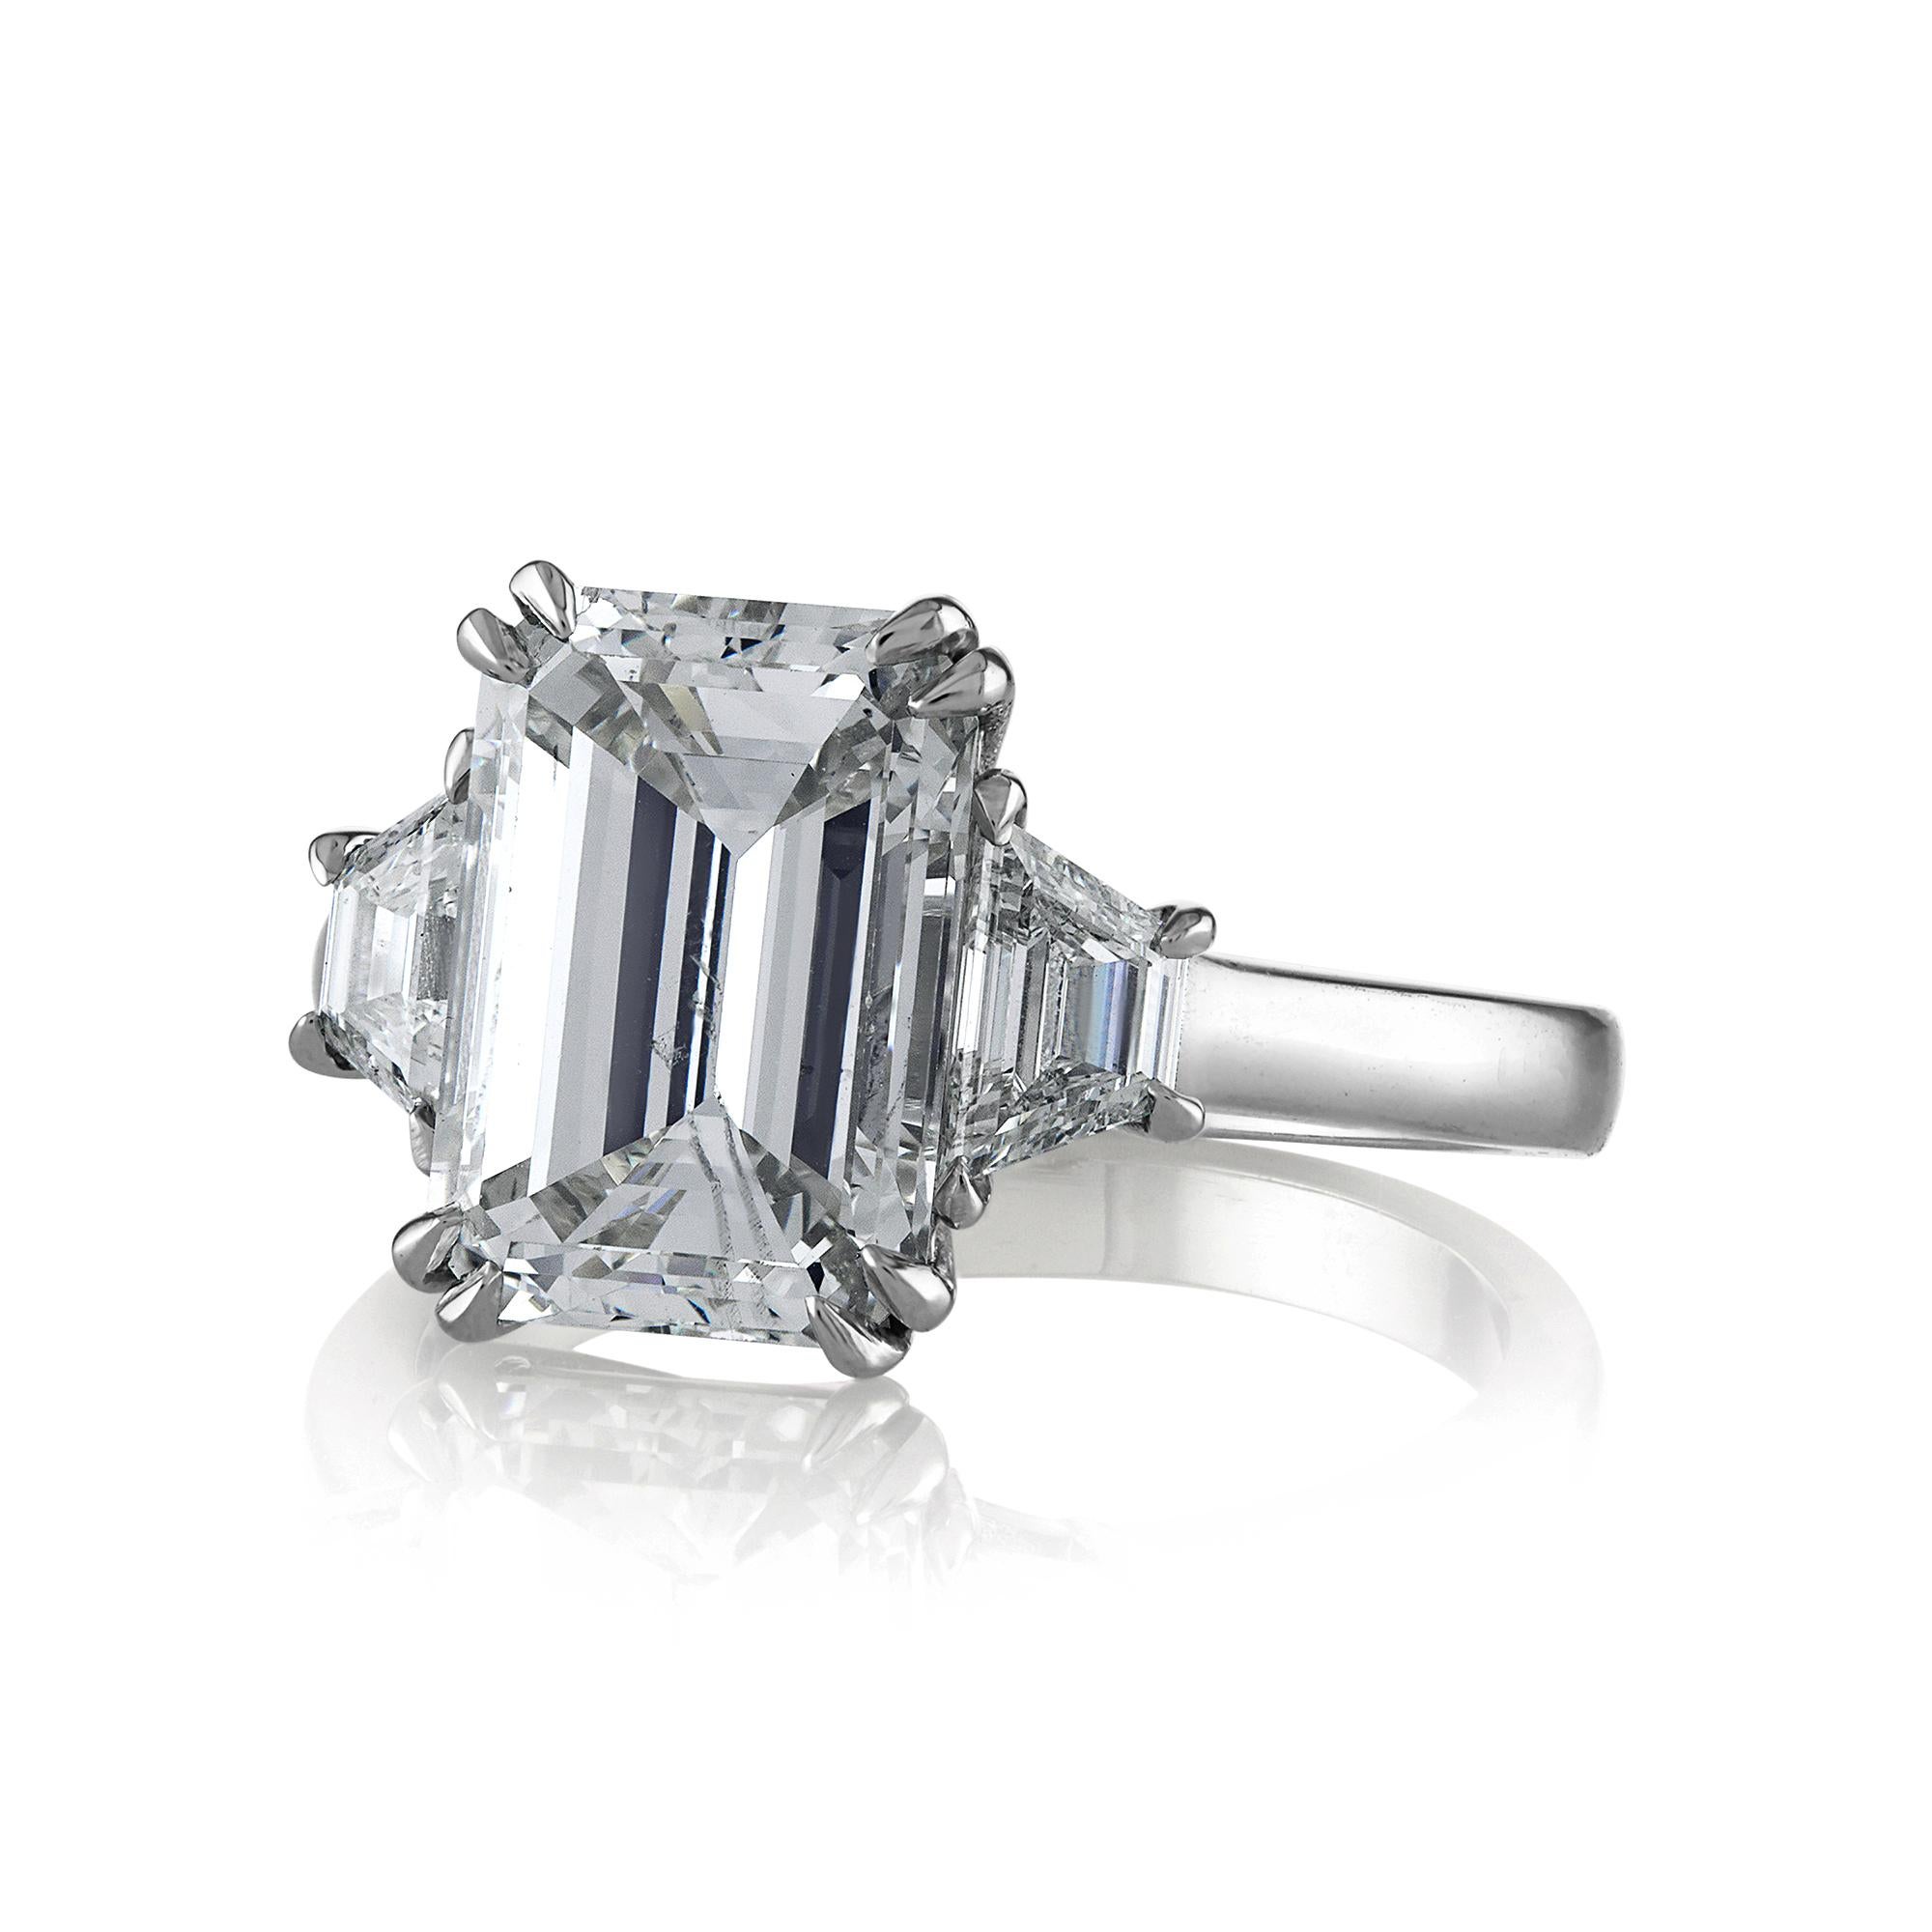 Impressionnante bague de fiançailles en platine GIA 4.29ctw Emerald Cut Trilogy Diamond Anniversary Ring

Cette bague impressionnante vous coupera le souffle ! Merveilleuse opportunité de posséder un énorme diamant 100% NATUREL, NON TRAITÉ, de